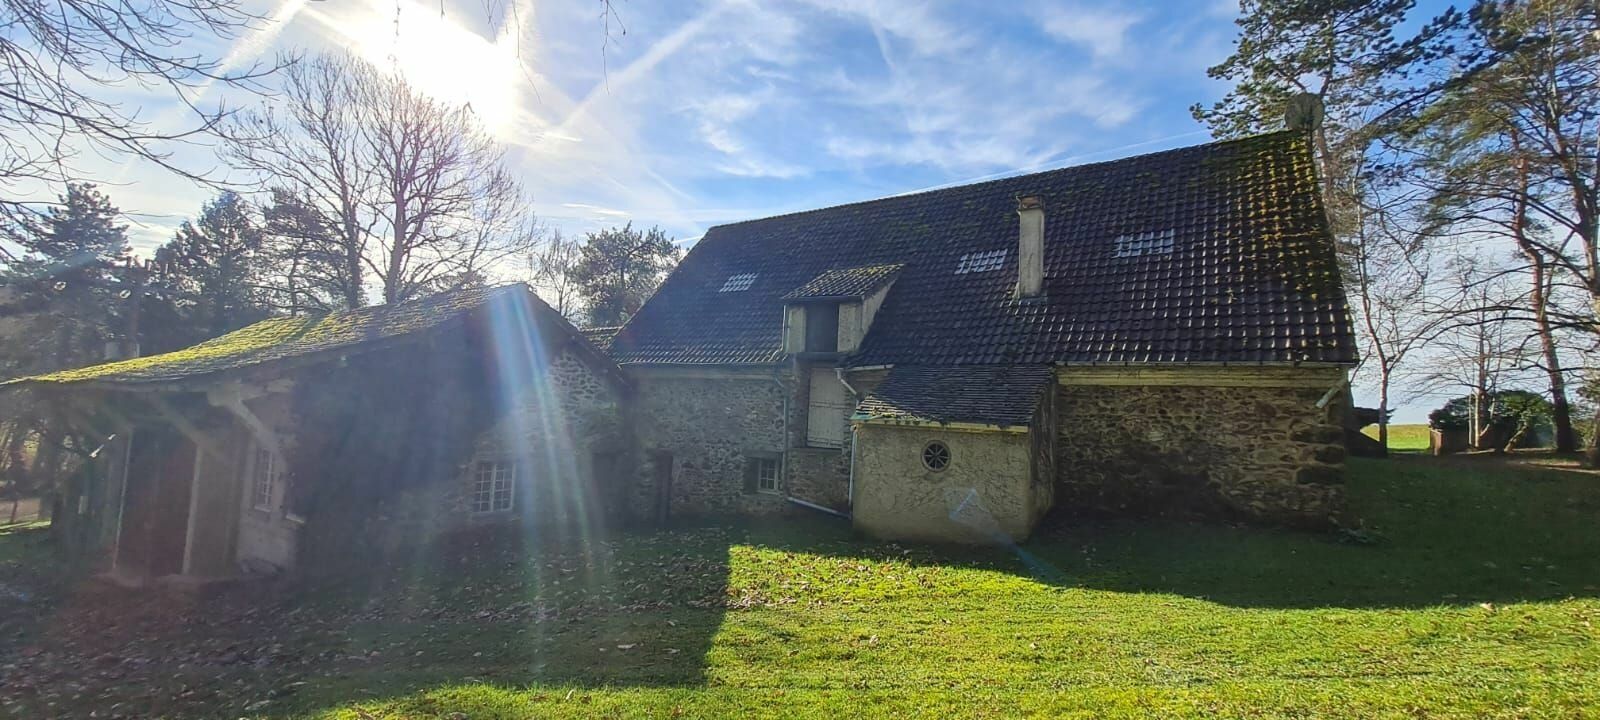 Maison à vendre 8 325m2 à Saâcy-sur-Marne vignette-5